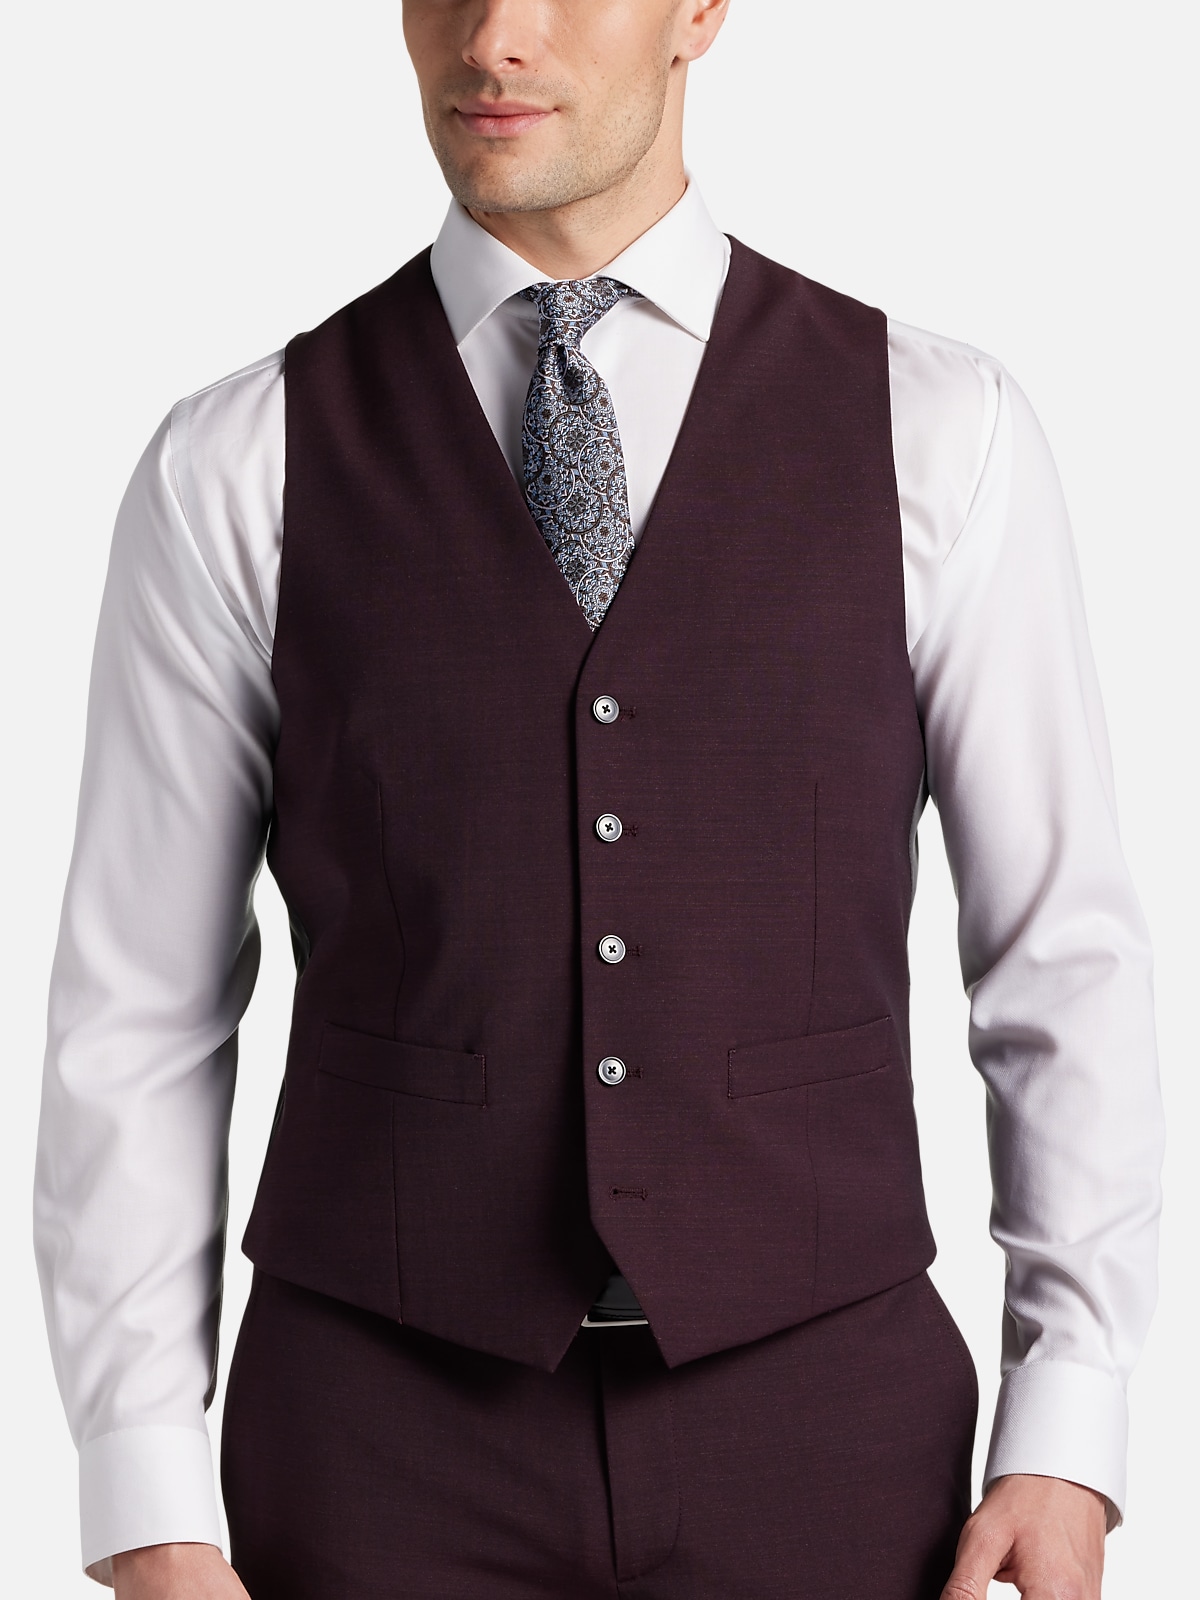 JOE Joseph Abboud Slim Fit Suit Separates Vest | All Clothing| Men's ...